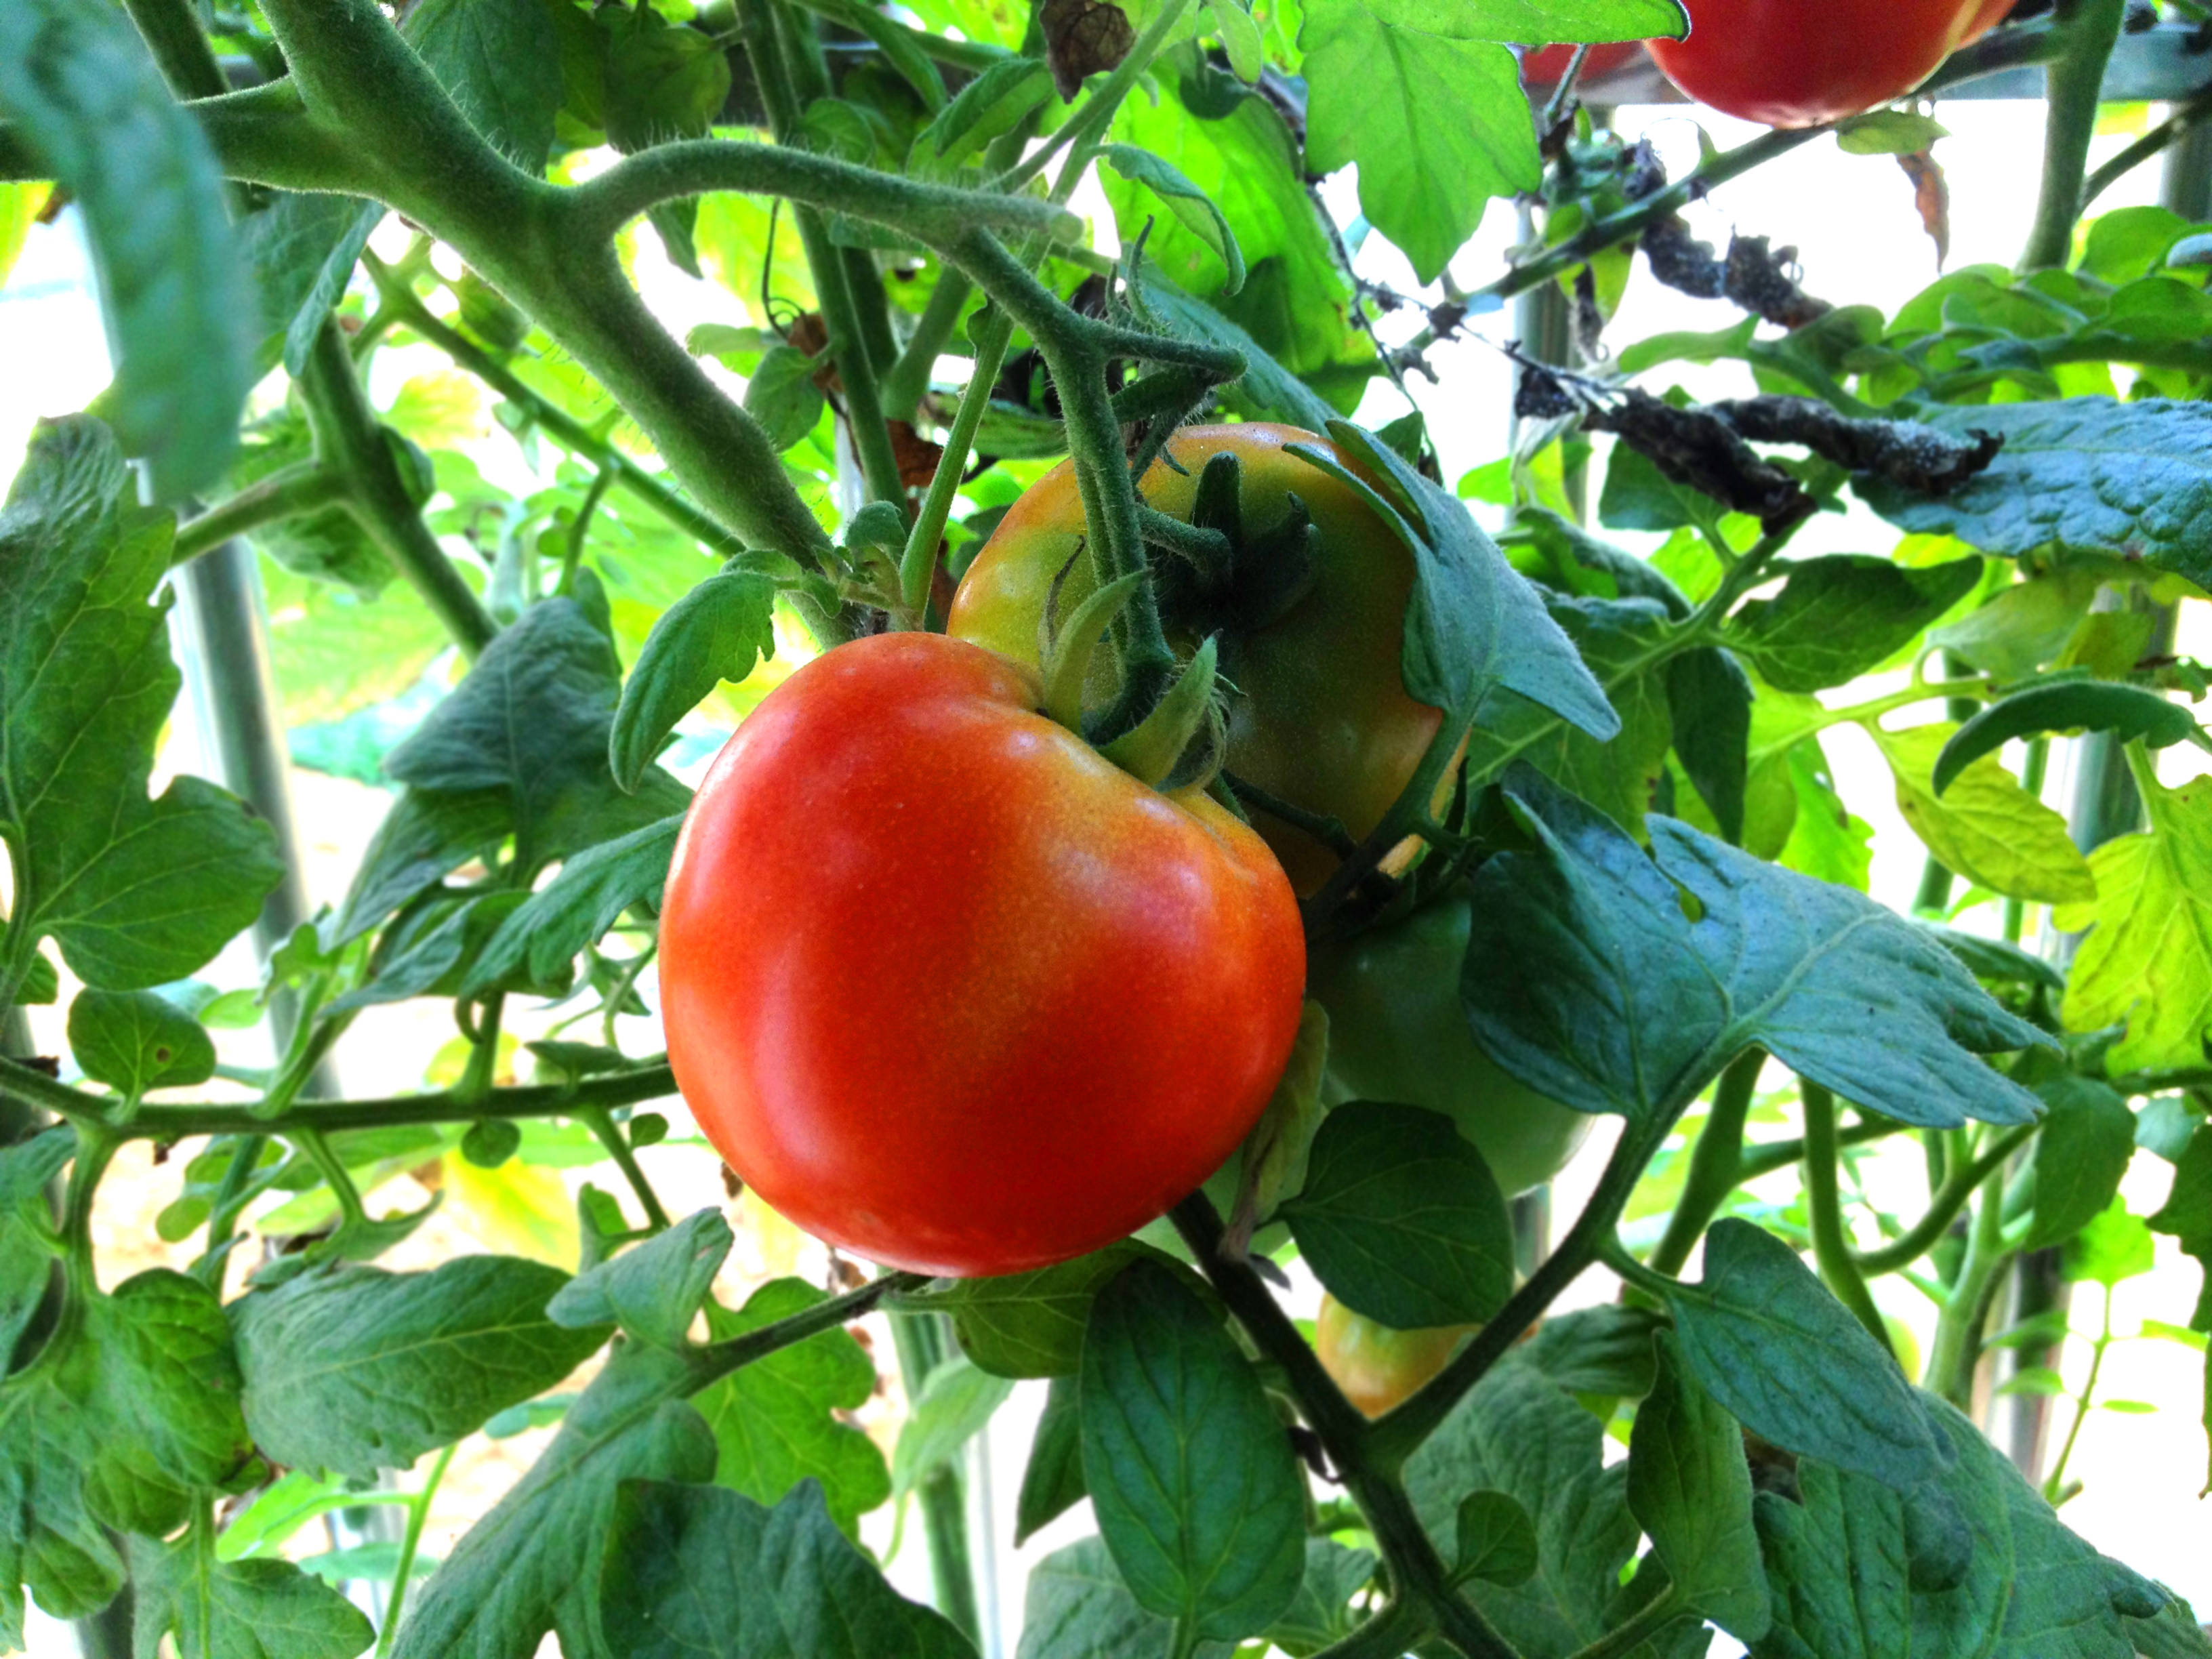 农友们要适当追施肥料,让番茄植株健壮生长,才能为果实输送足够的养分